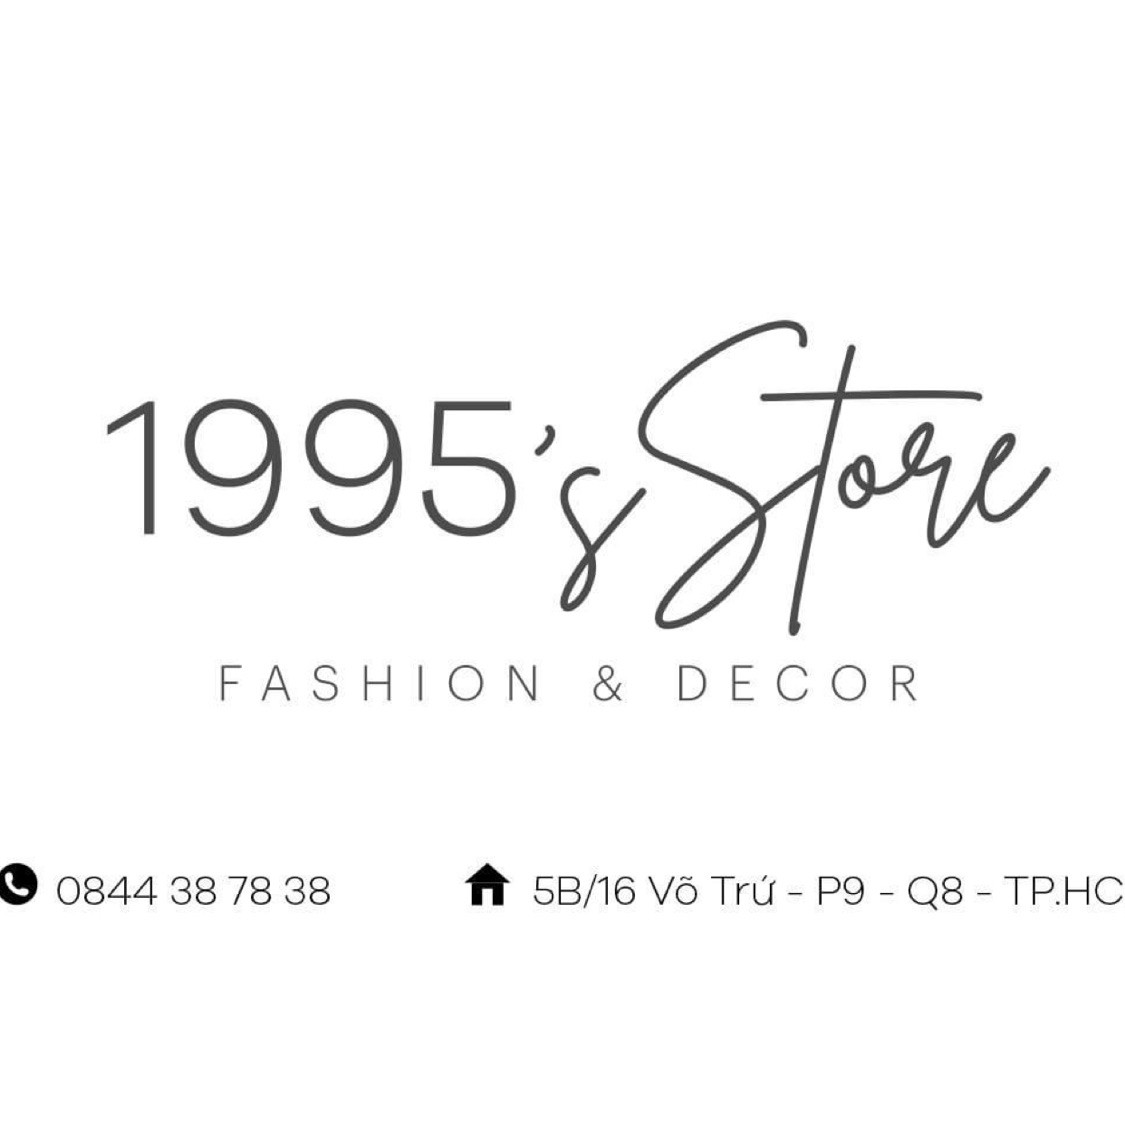 1995’s Store - Decor